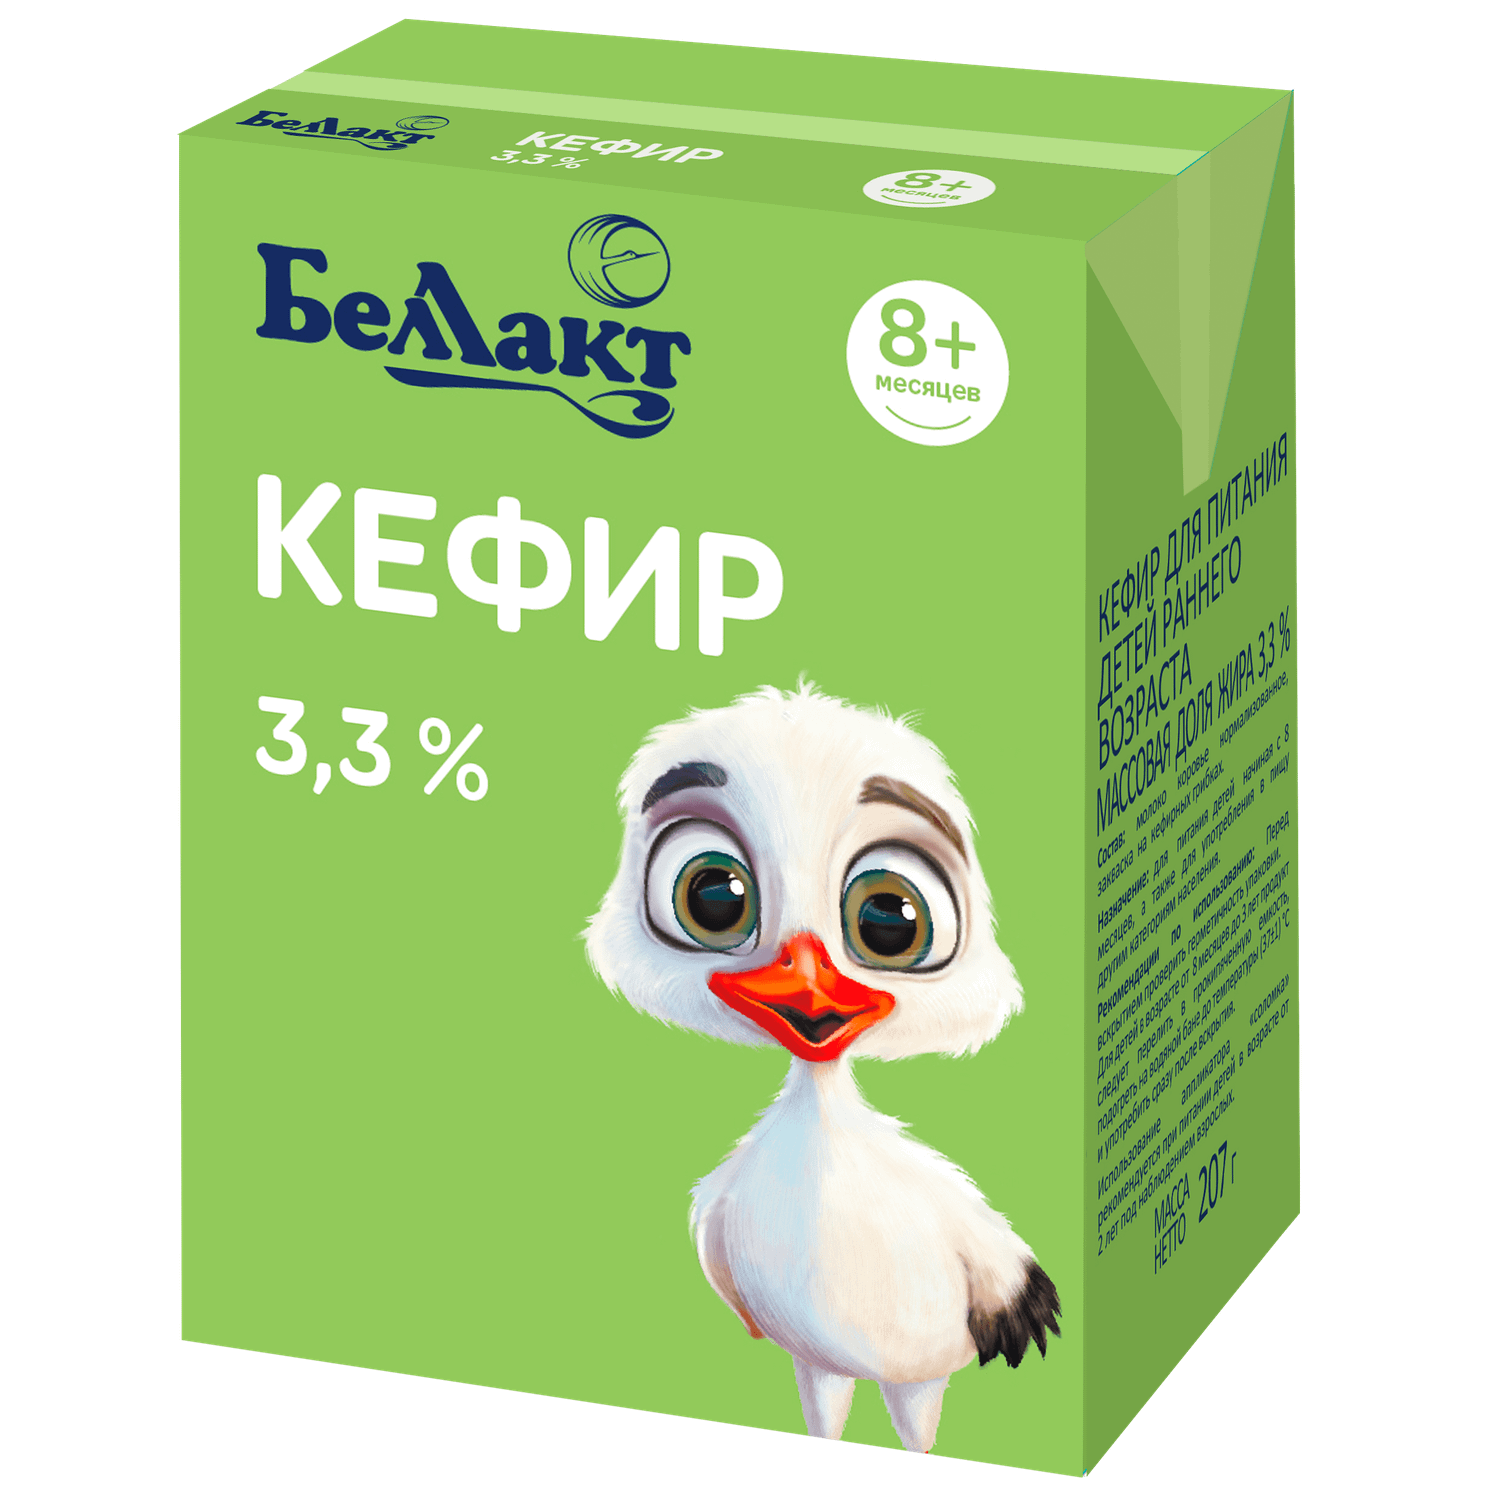 Кефир Беллакт для детского питания массовая доля жира 3.3% Tetra Brik Aseptic (TBA) 207грамм - фото 1